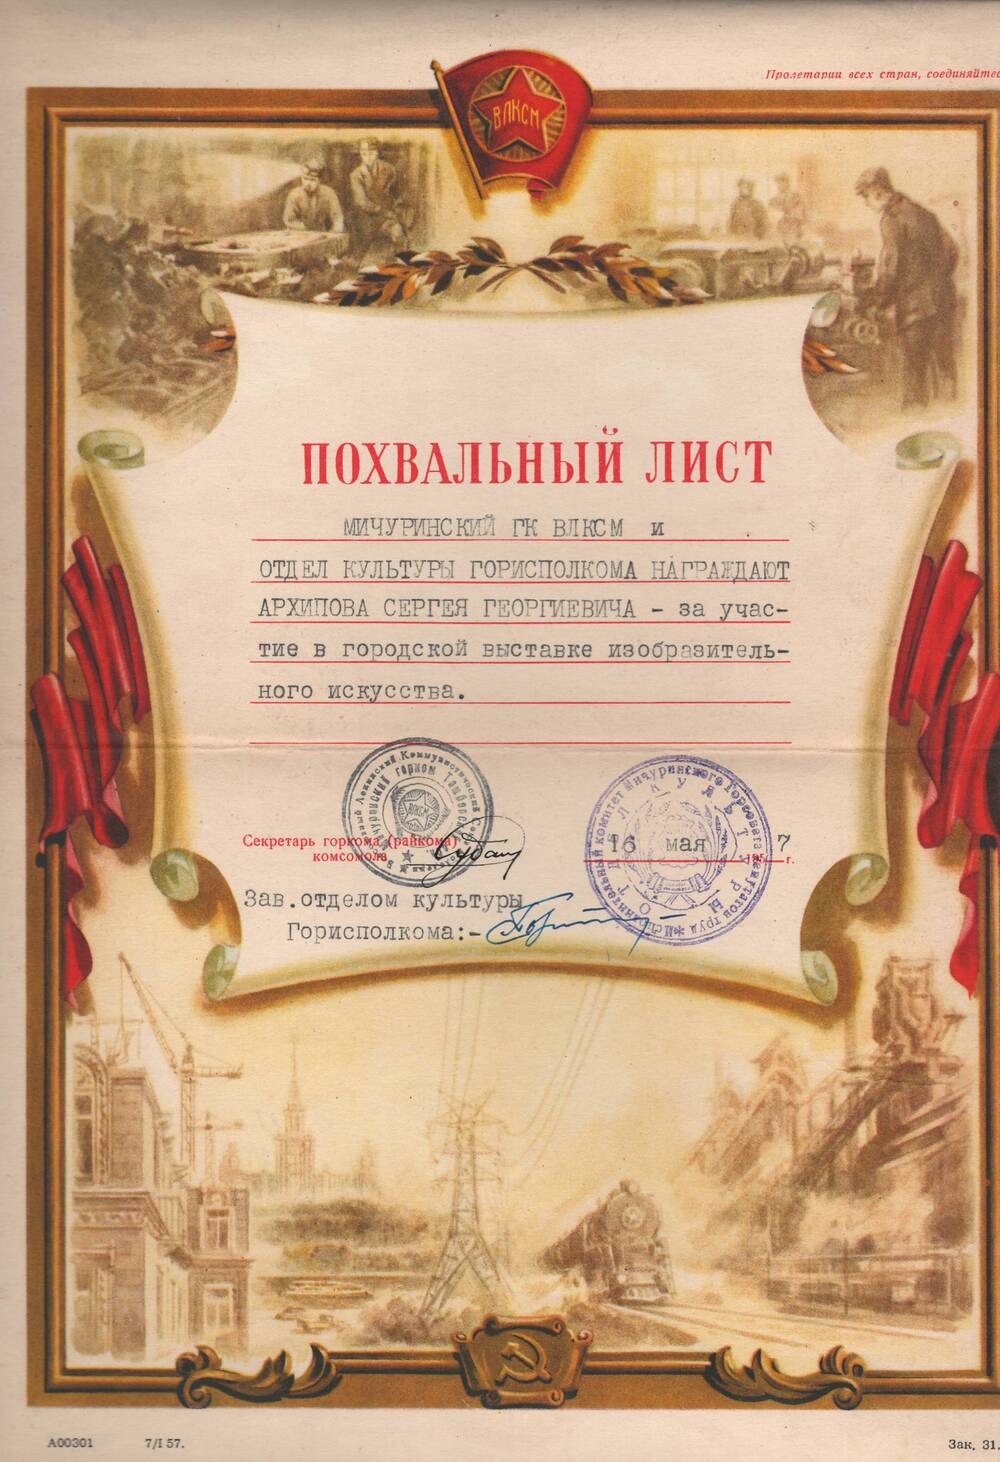 Похвальный лист Архипова С.Г. за участие в городской выставке изобразительного искусства.